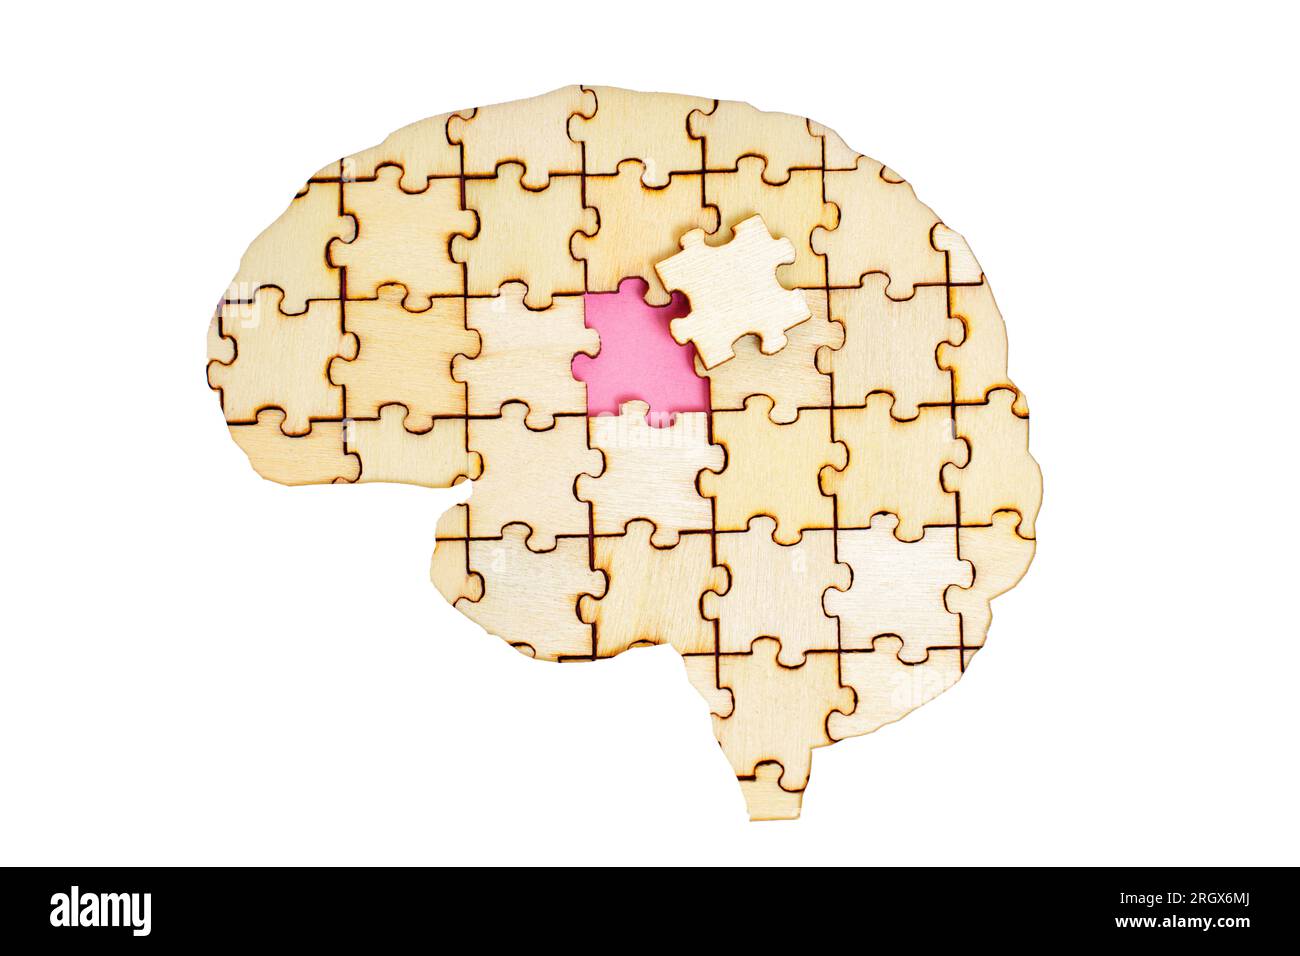 Modèle de cerveau humain arrangé à partir de pièces de puzzle en bois avec la pièce finale à mettre en place. Croissance personnelle et défis surmonter le concept Banque D'Images